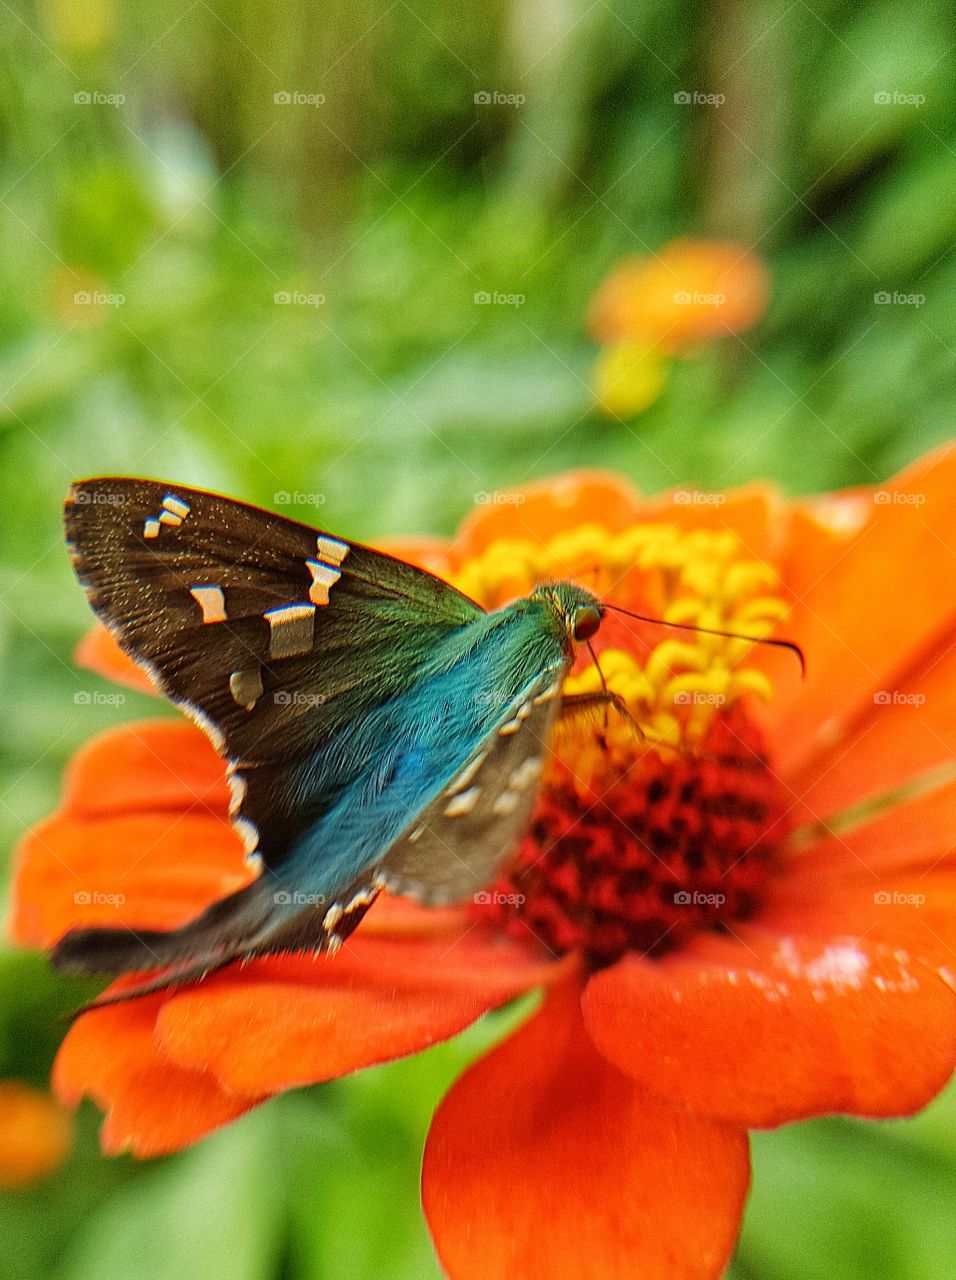 linda borboleta azul